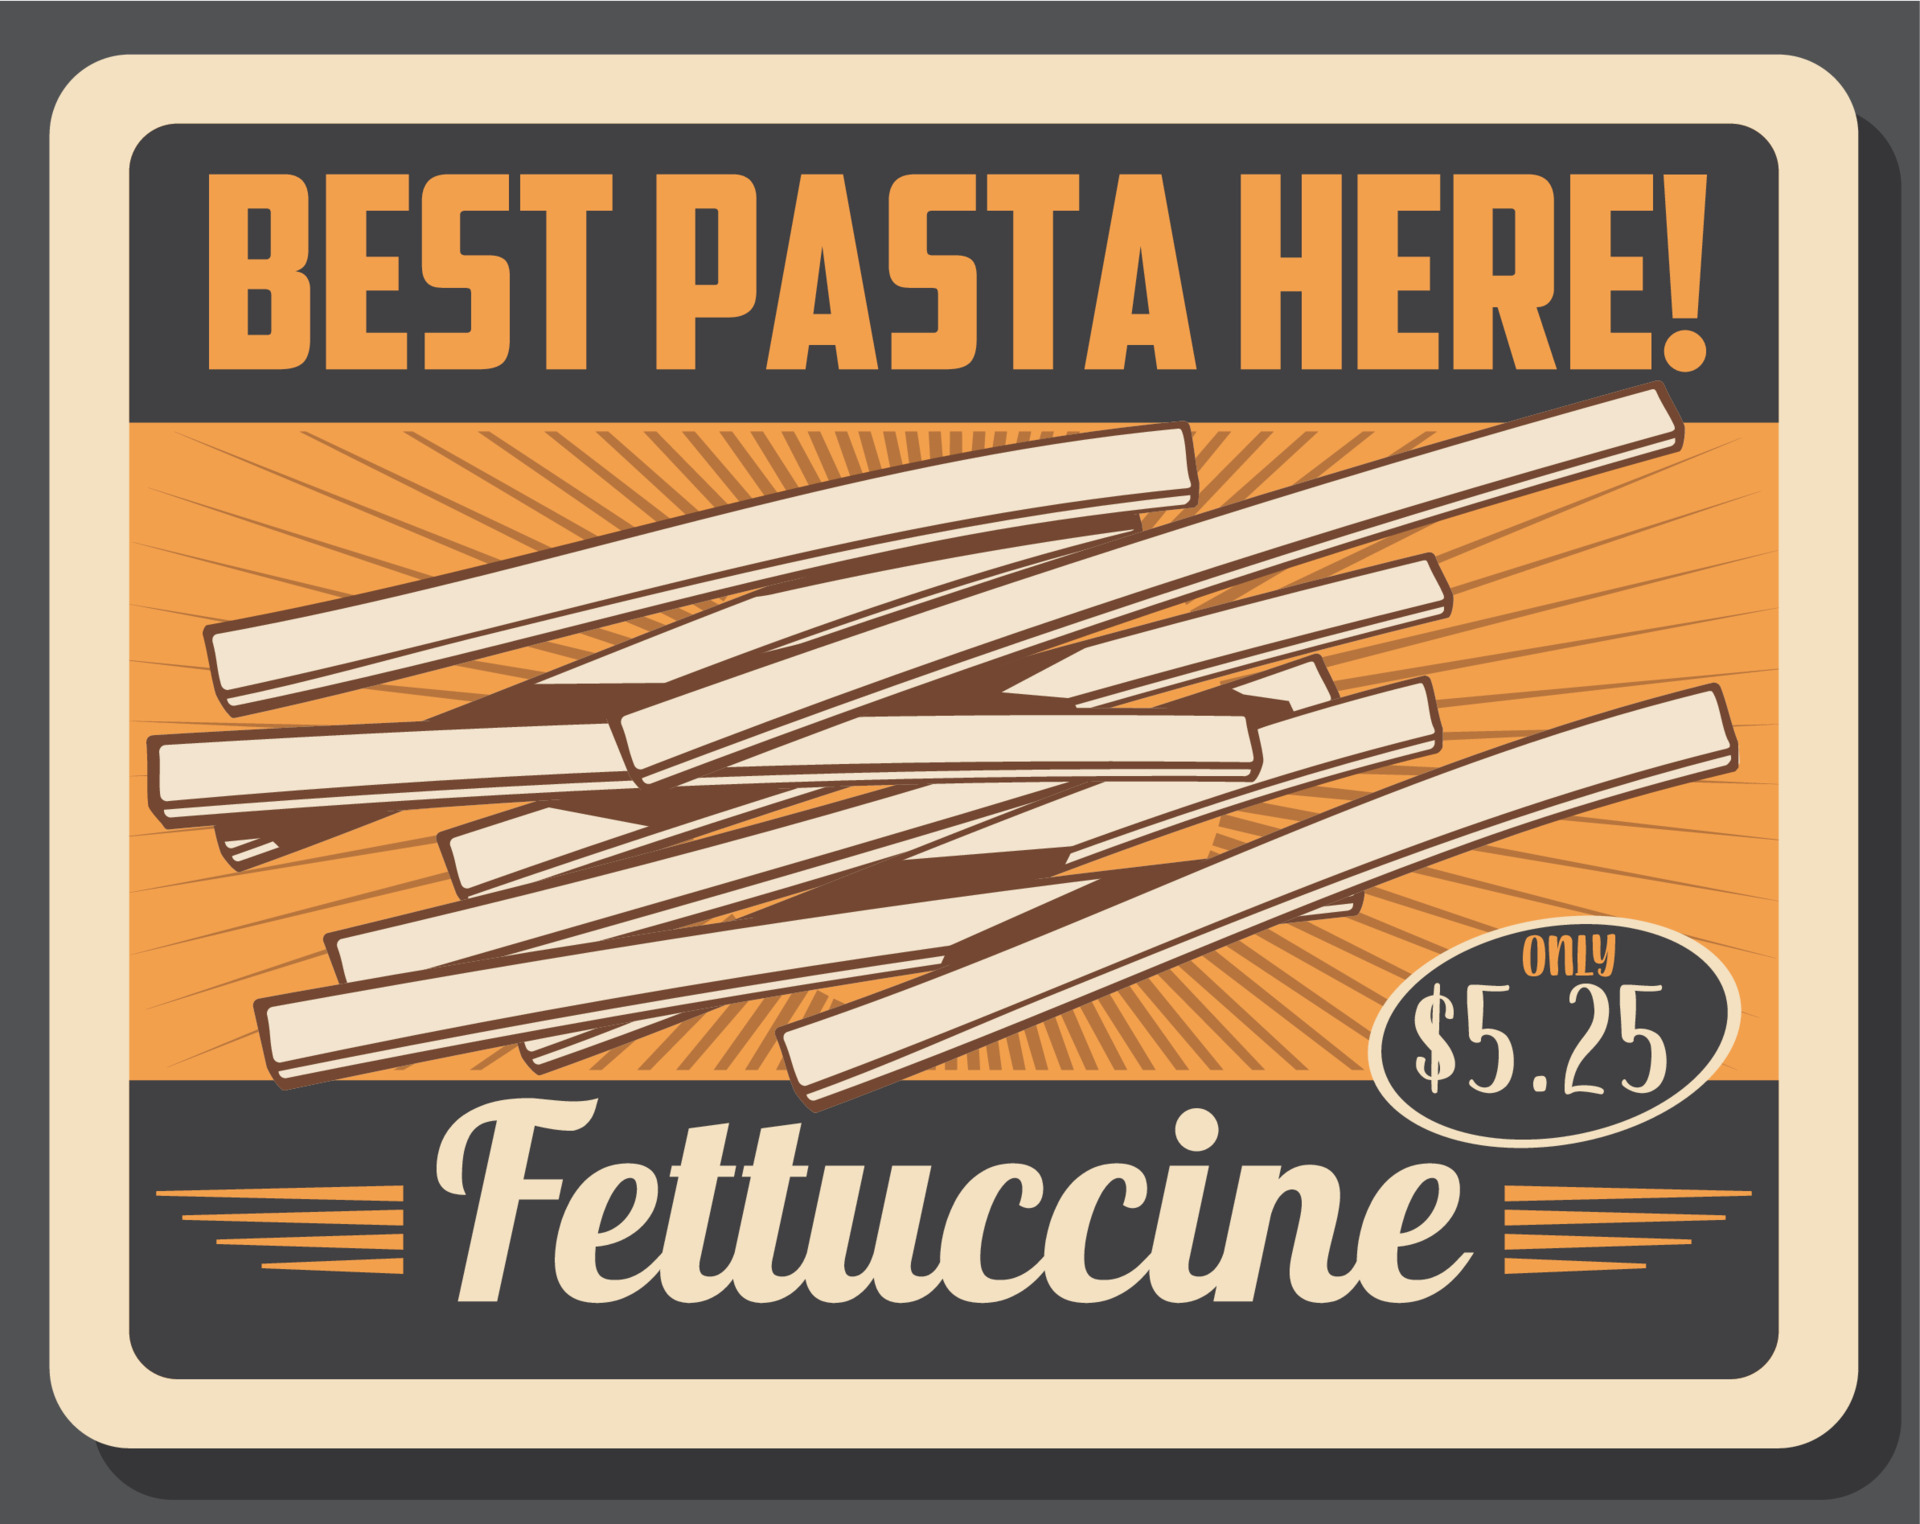 eetbaar Uitdaging Leggen pasta soorten, fettuccine prijs label, Italiaans keuken 16163395 - Download  Free Vectors, Vector Bestanden, Ontwerpen Templates